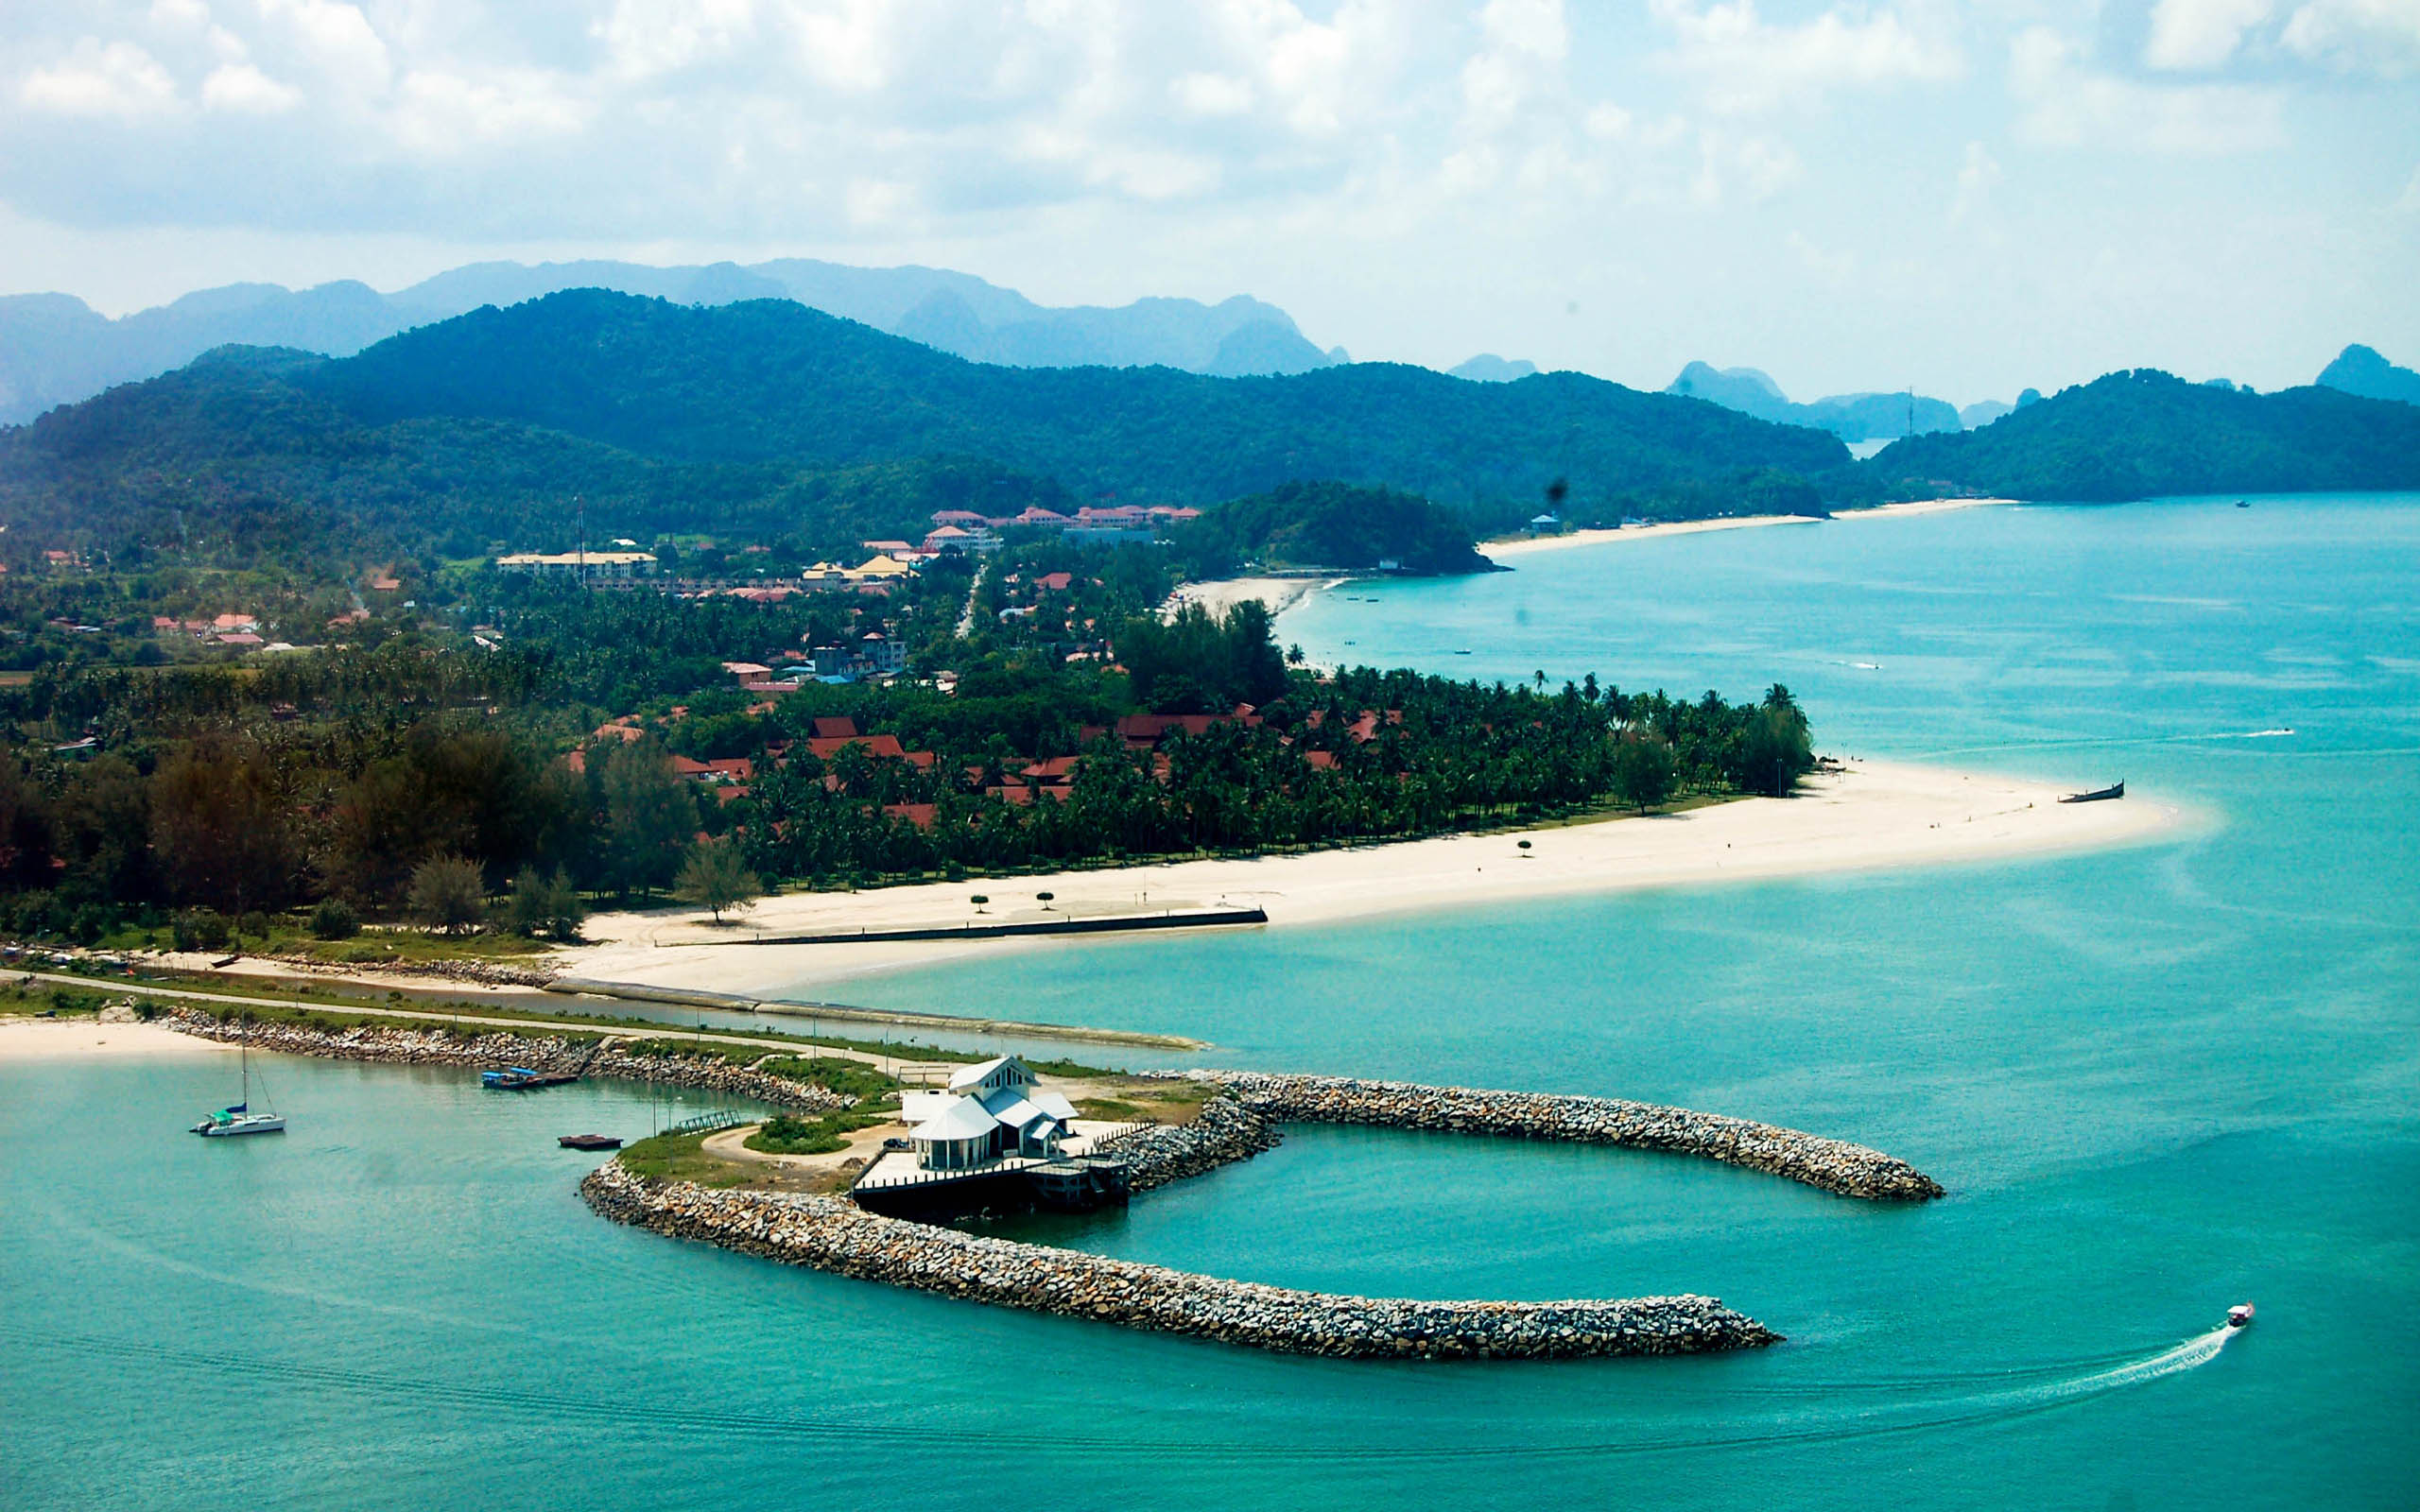 Khám phá các hòn đảo xinh đẹp ở Malaysia - Langkawi Island